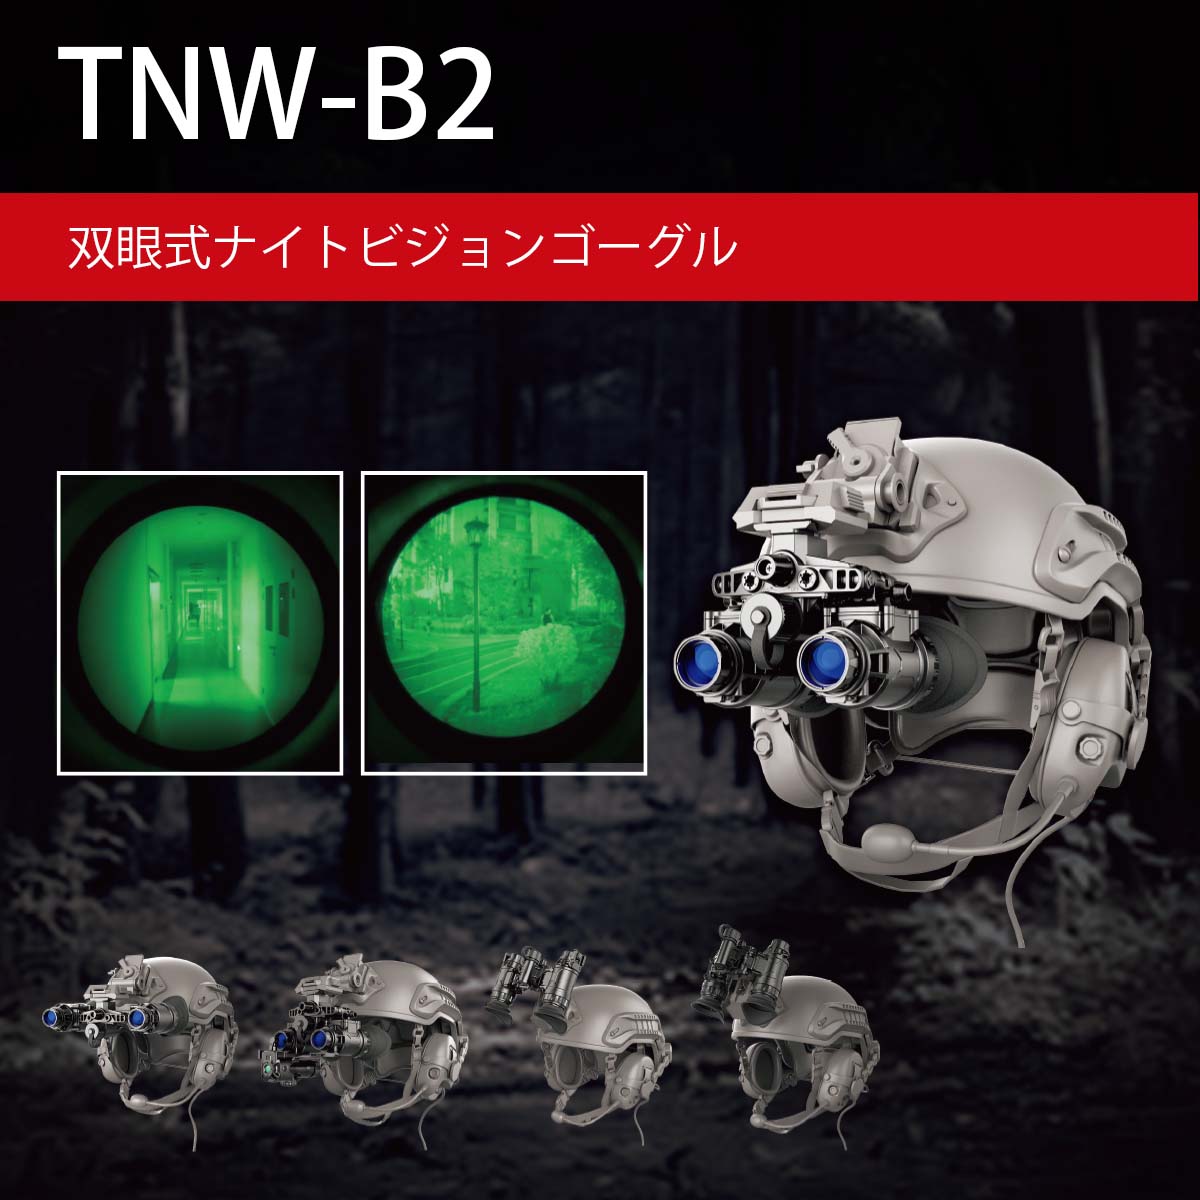 TIME 双眼式ナイトビジョンゴーグル TNW-B2-W（イメージ管：White）  ※販売価格はお問い合わせください-サーマルカメラ専門総合サイト・アットサーマル